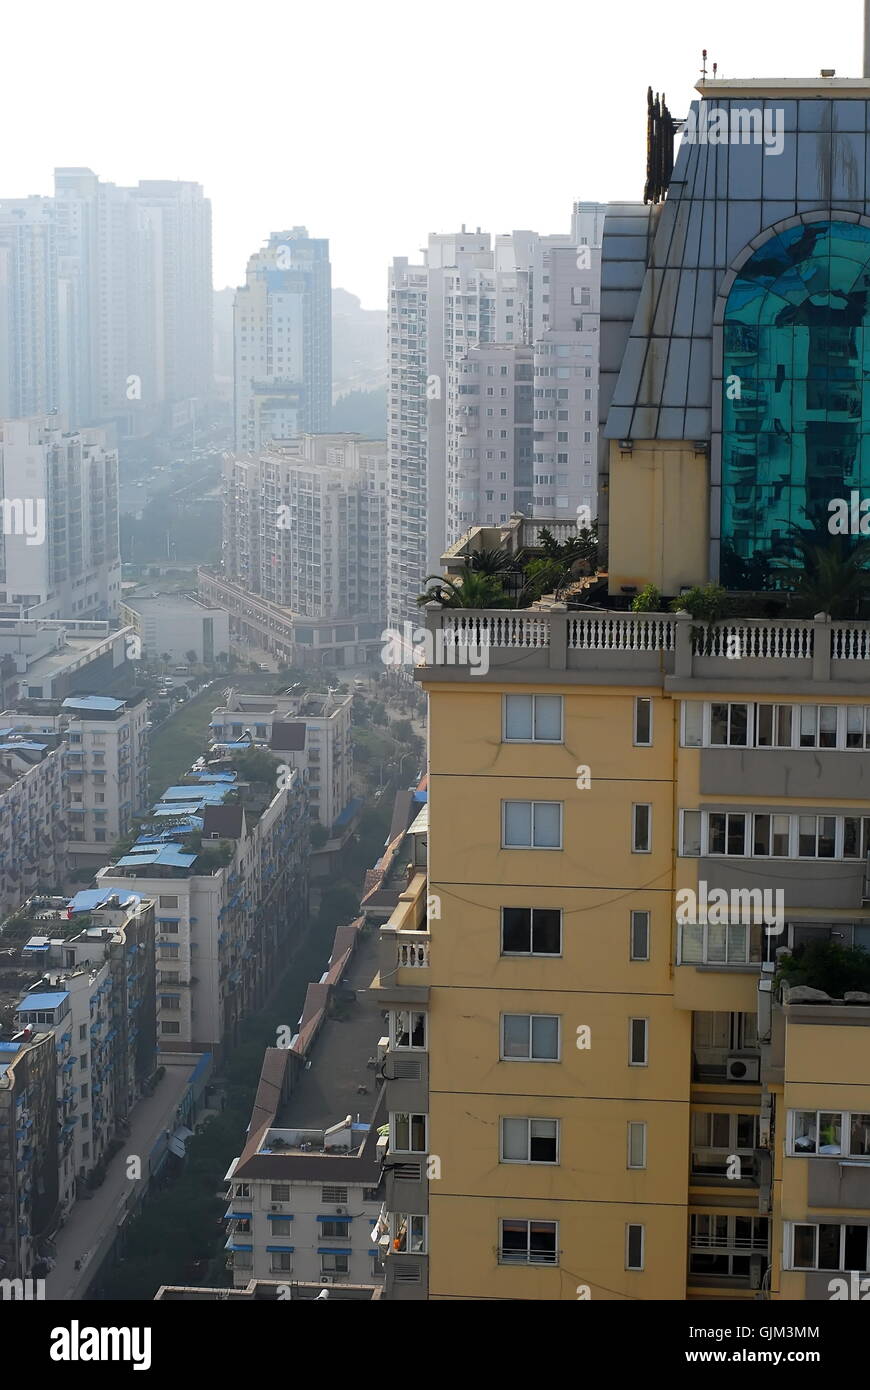 Développement d'une petite ville de Chine - Nouveaux bâtiments Banque D'Images